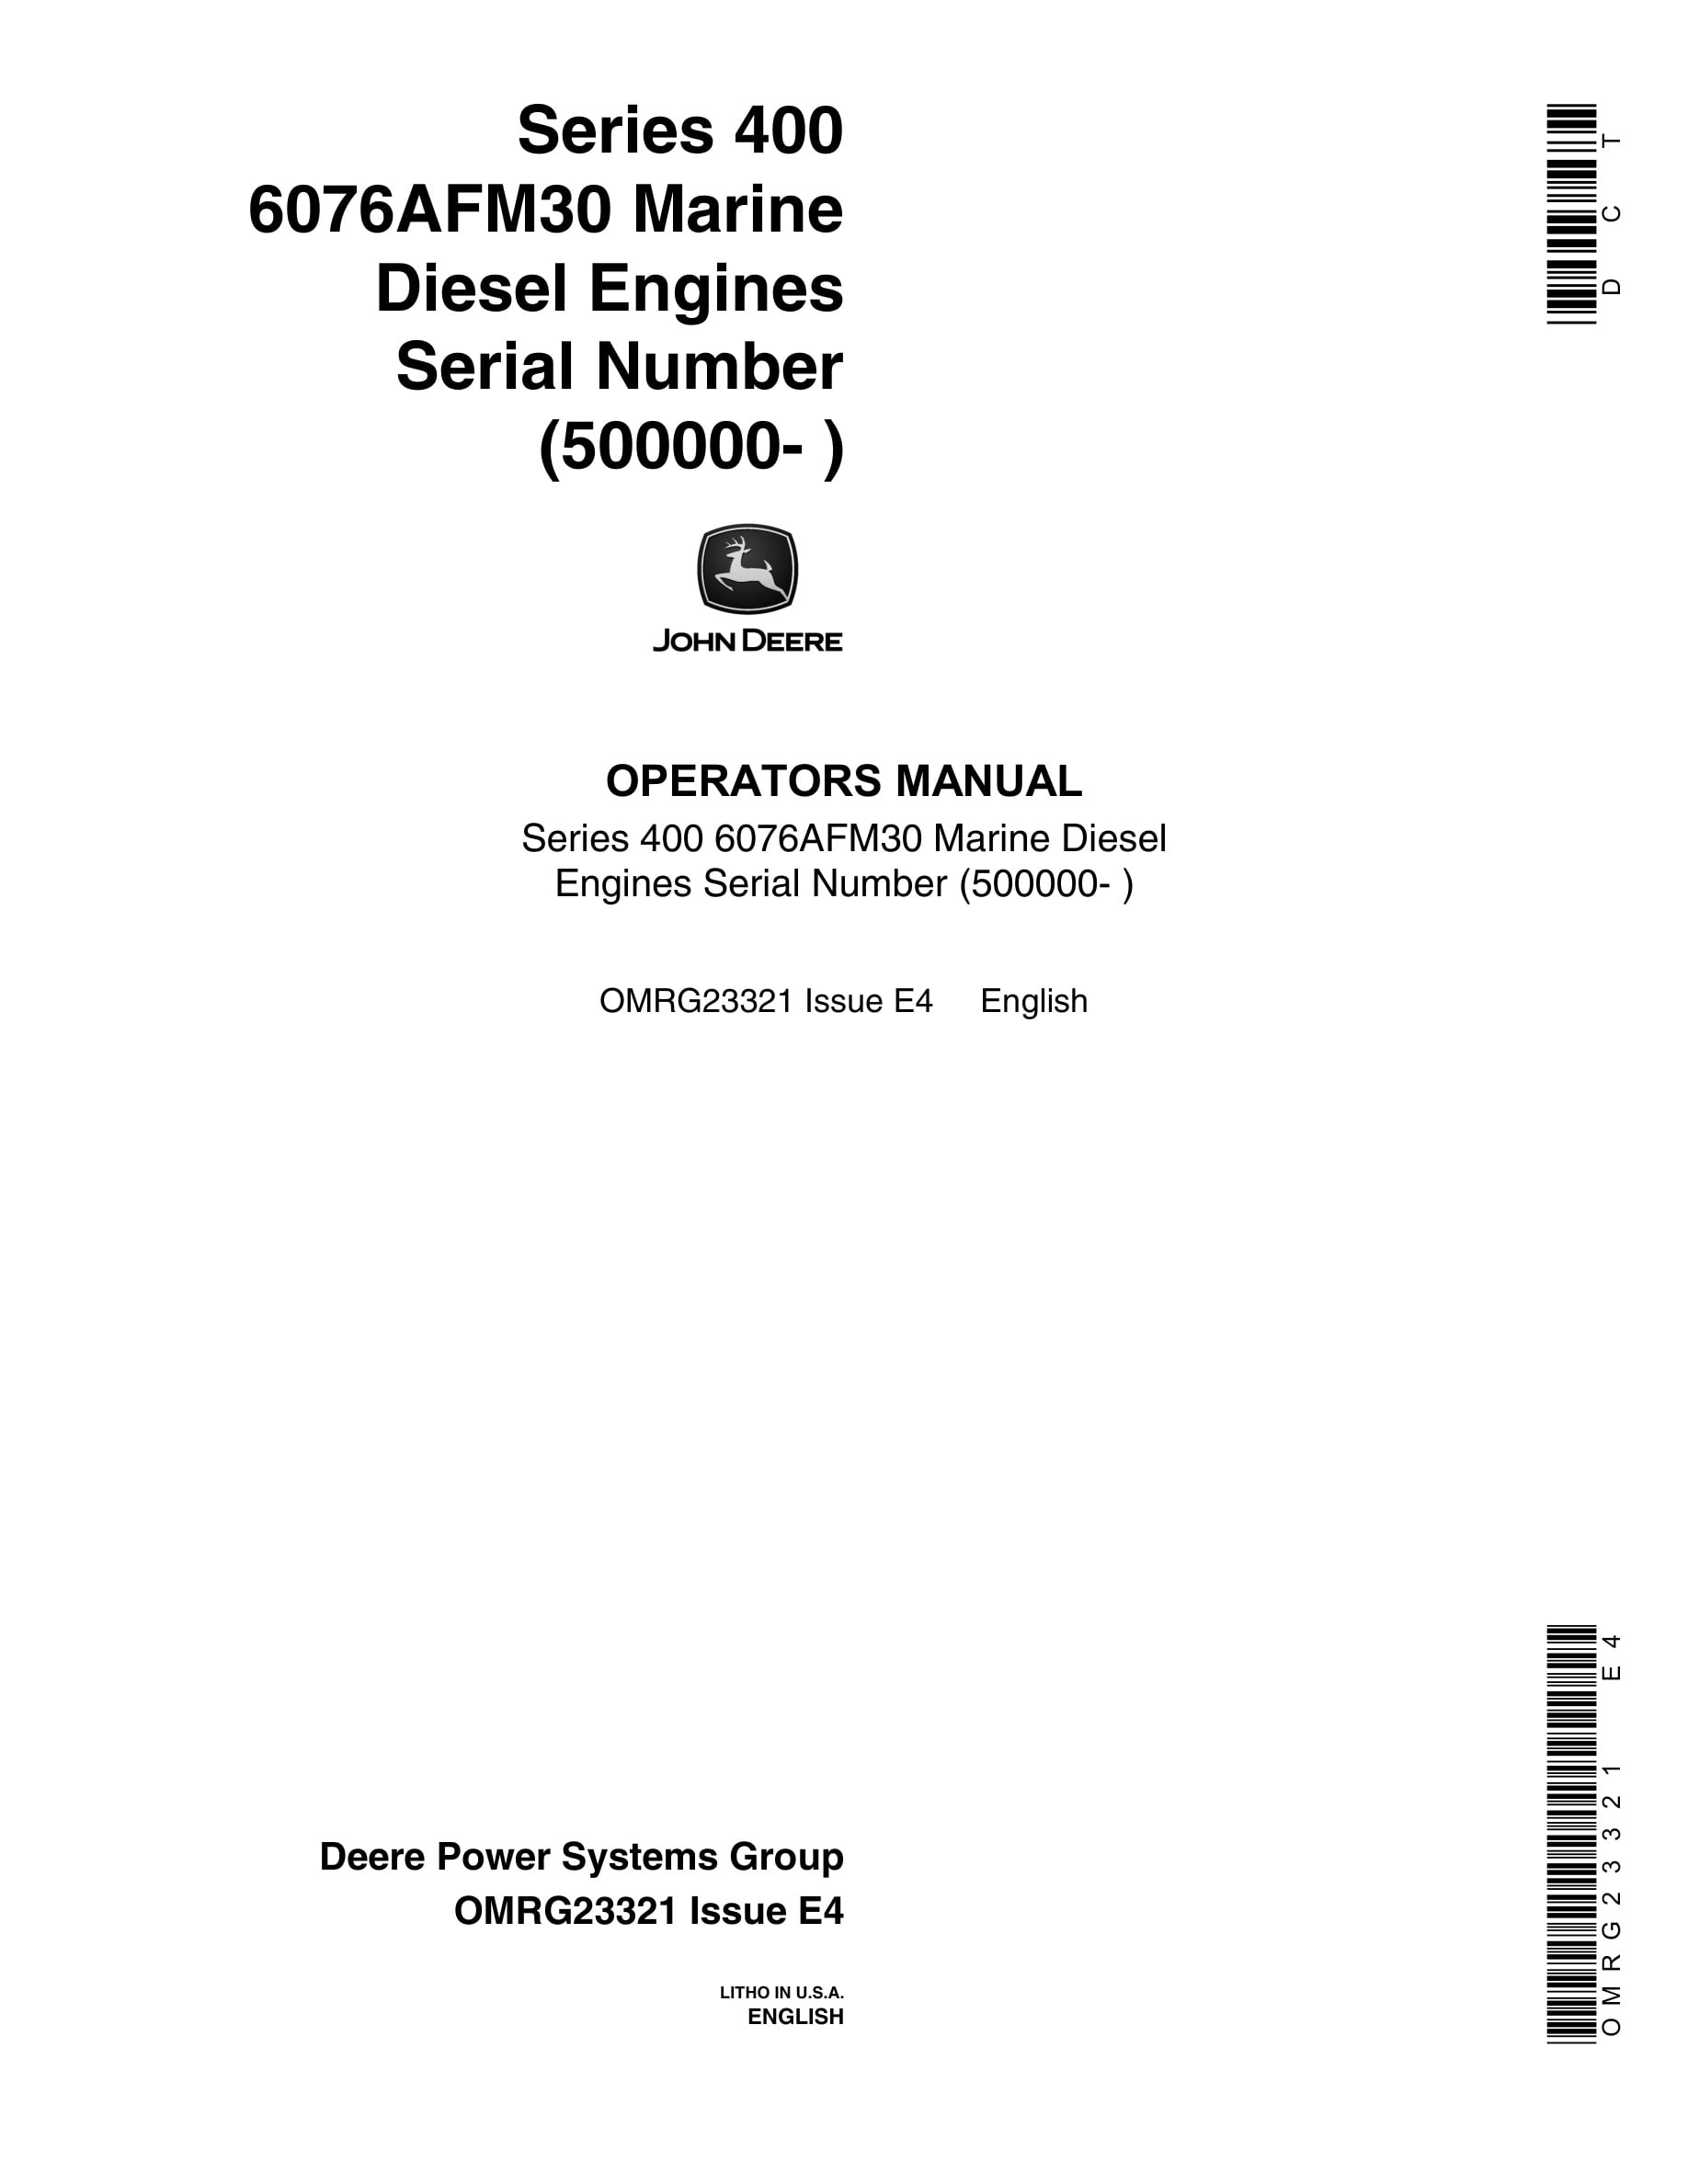 John Deere PowerTech Series 400 6076AFM30 Marine Diesel Engines Operator Manual OMRG23321-1